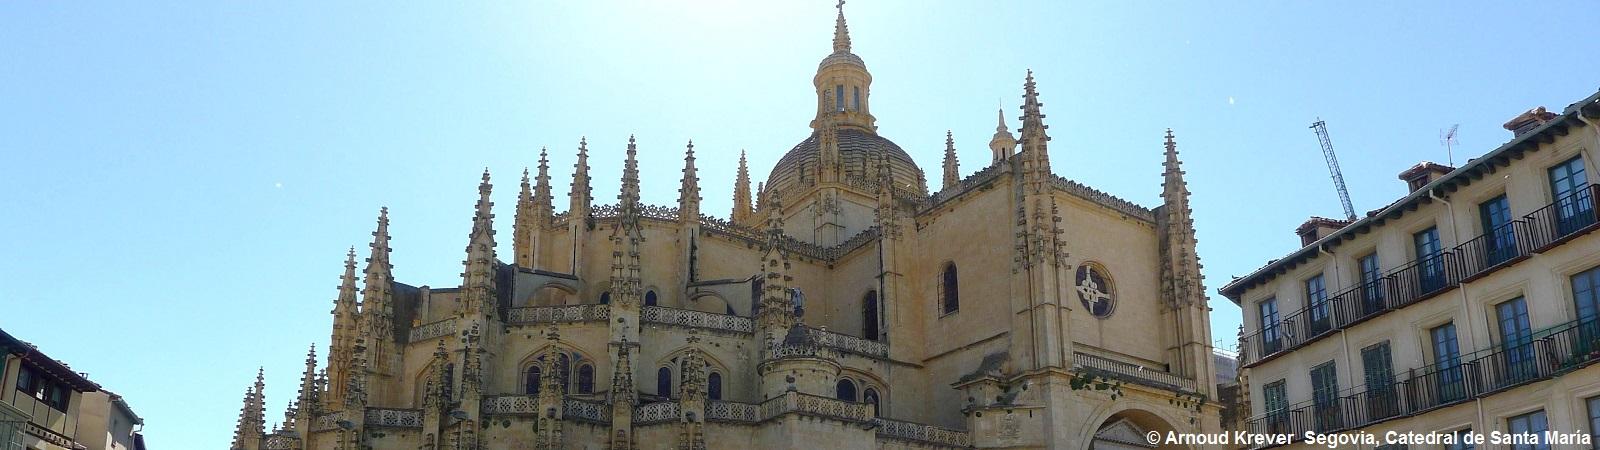 14CM (321) Segovia (20) Catedral de Santa María, 16e eeuw,